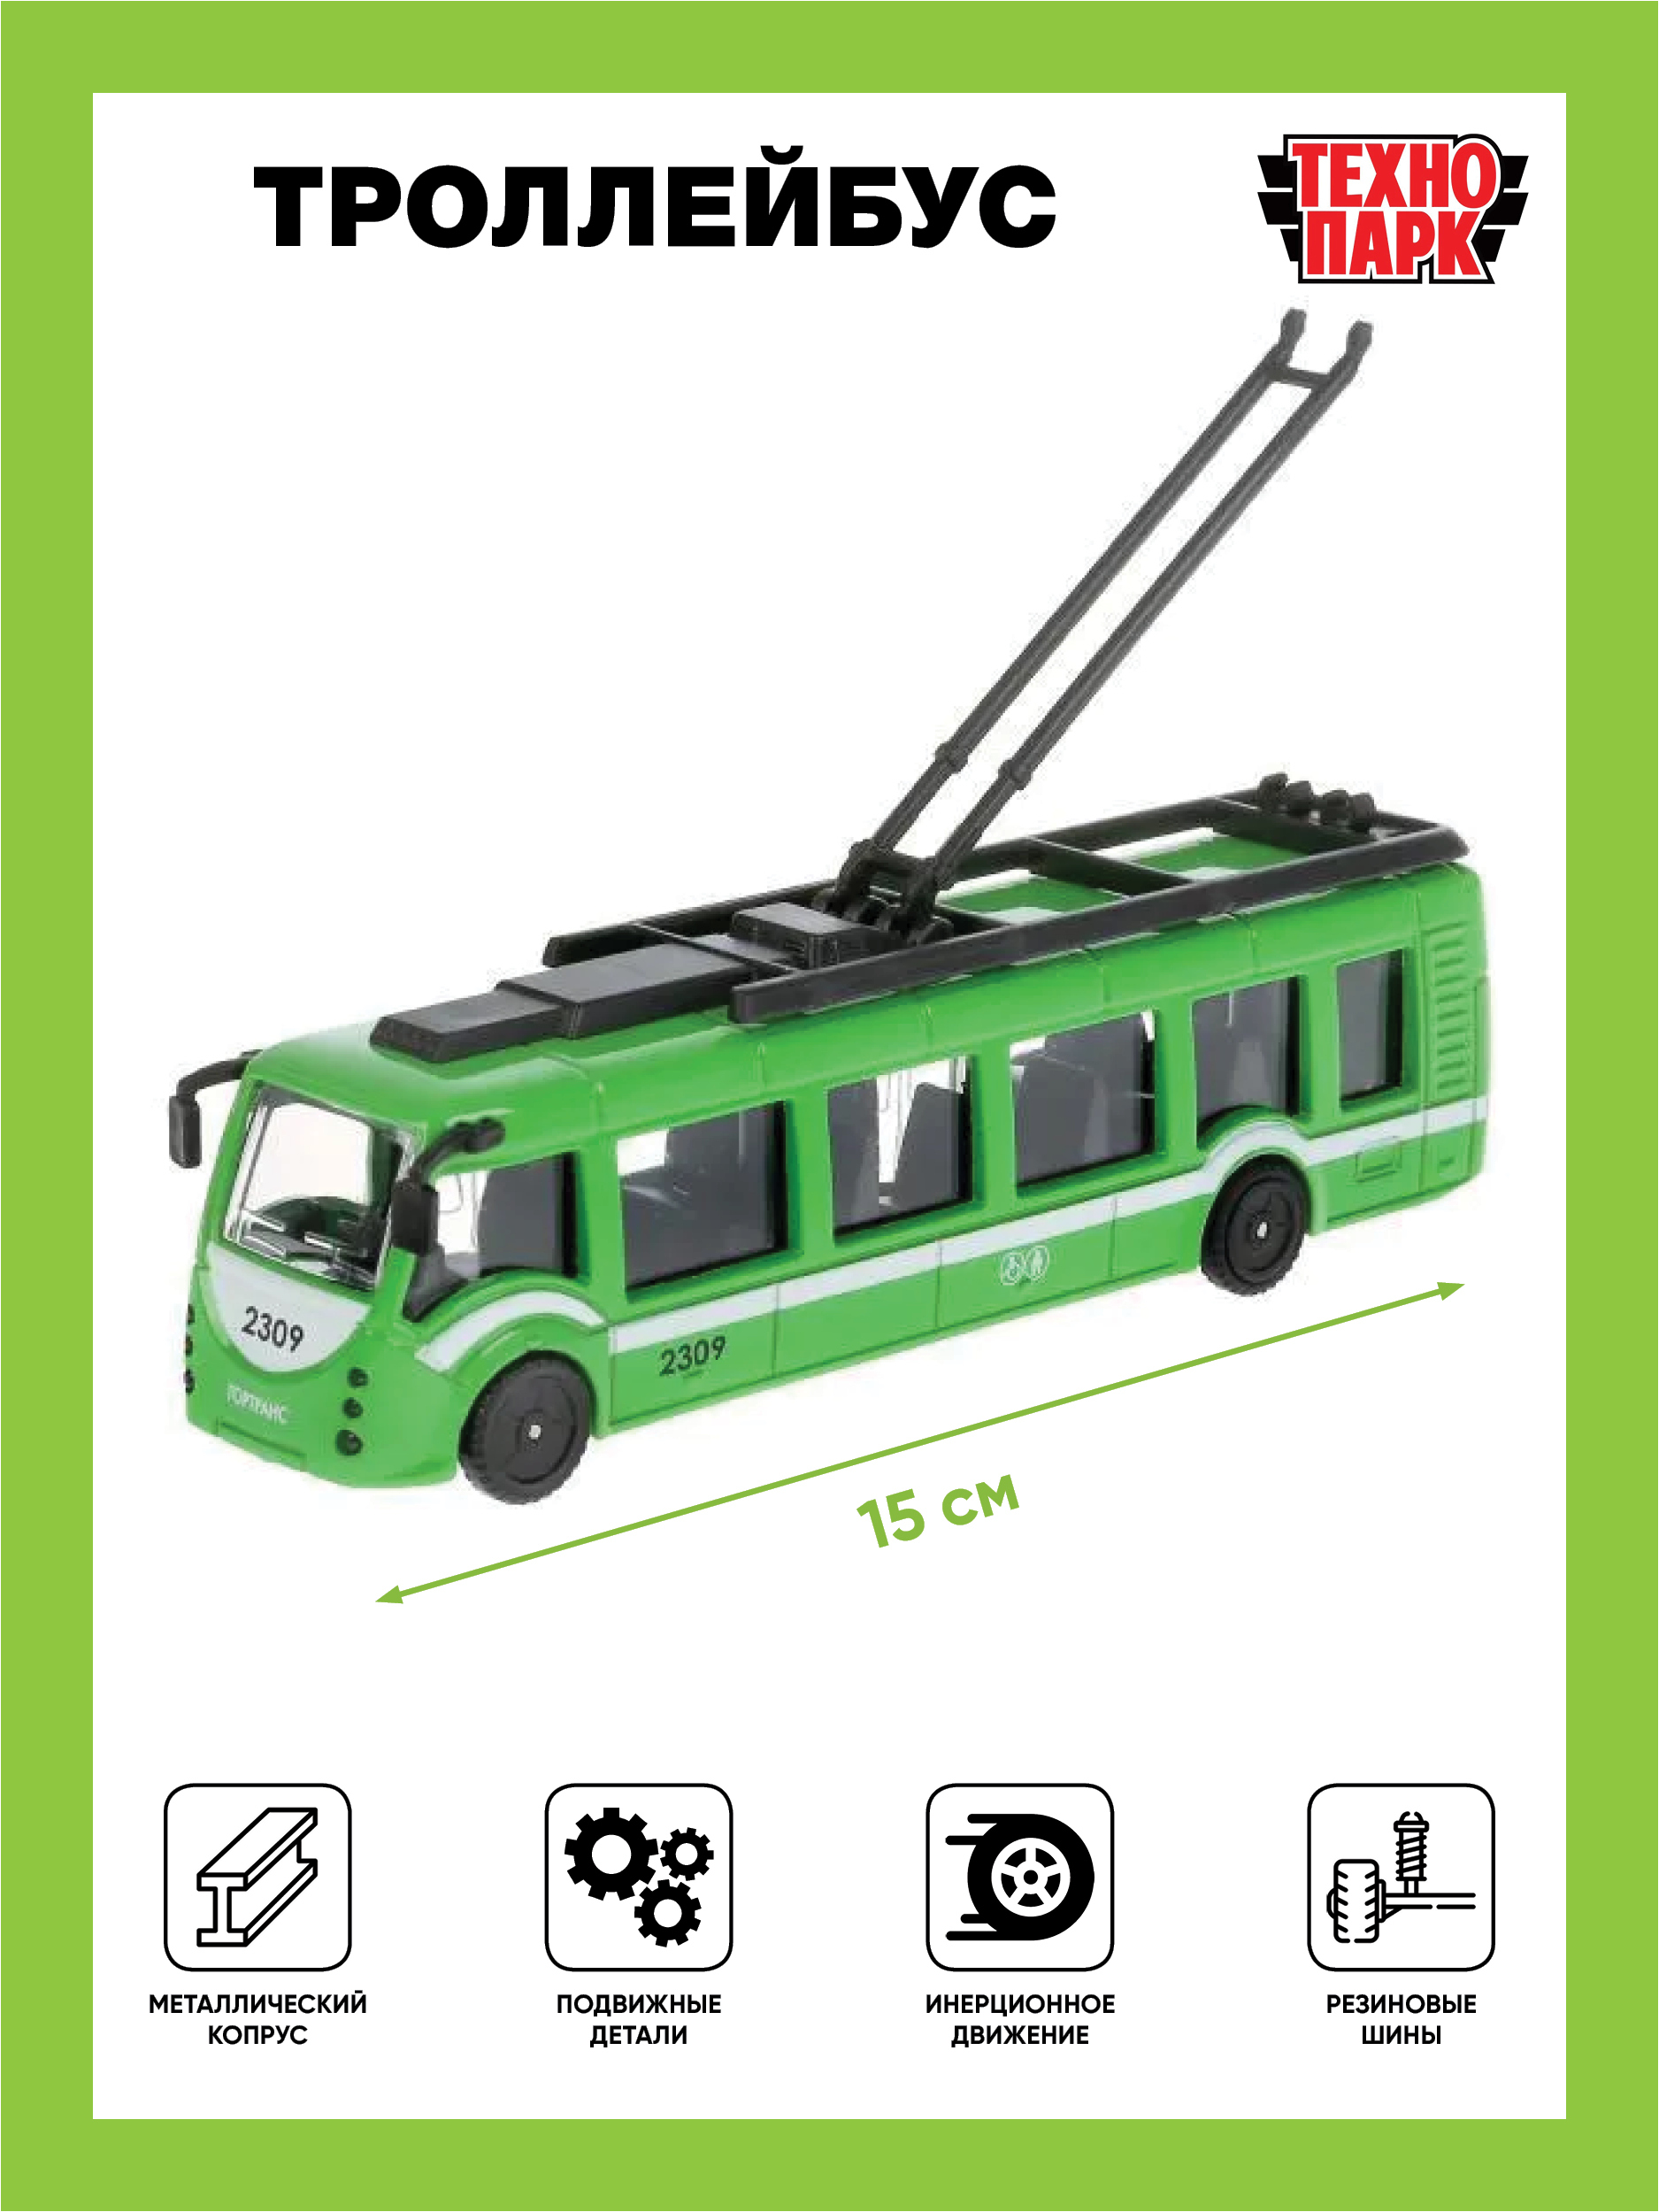 Троллейбус характеристики. Технопарк троллейбус ГОРТРАНС. Технопарк троллейбус SB-16-65-GN-WB. Троллейбус Технопарк trol-RC 24 см. Технопарк троллейбус зеленый 18 см.